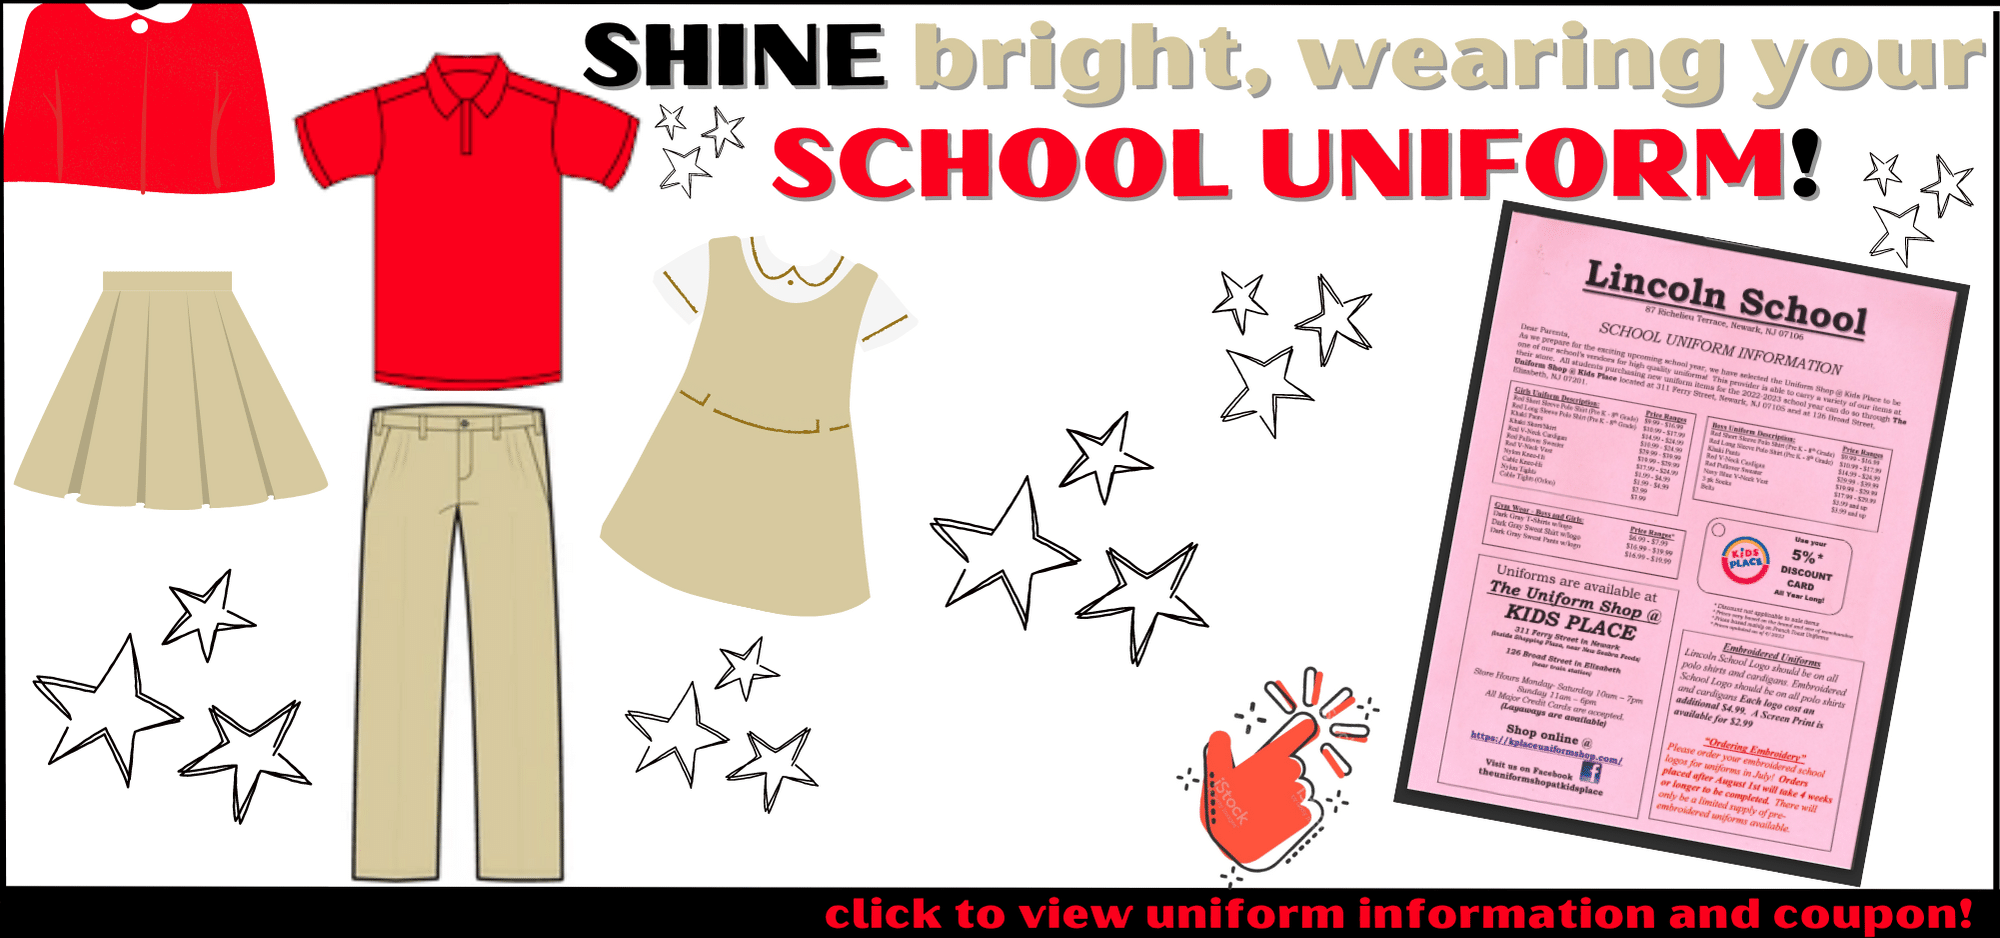 Be Ready, wearing your SCHOOL UNIFORM! 2023